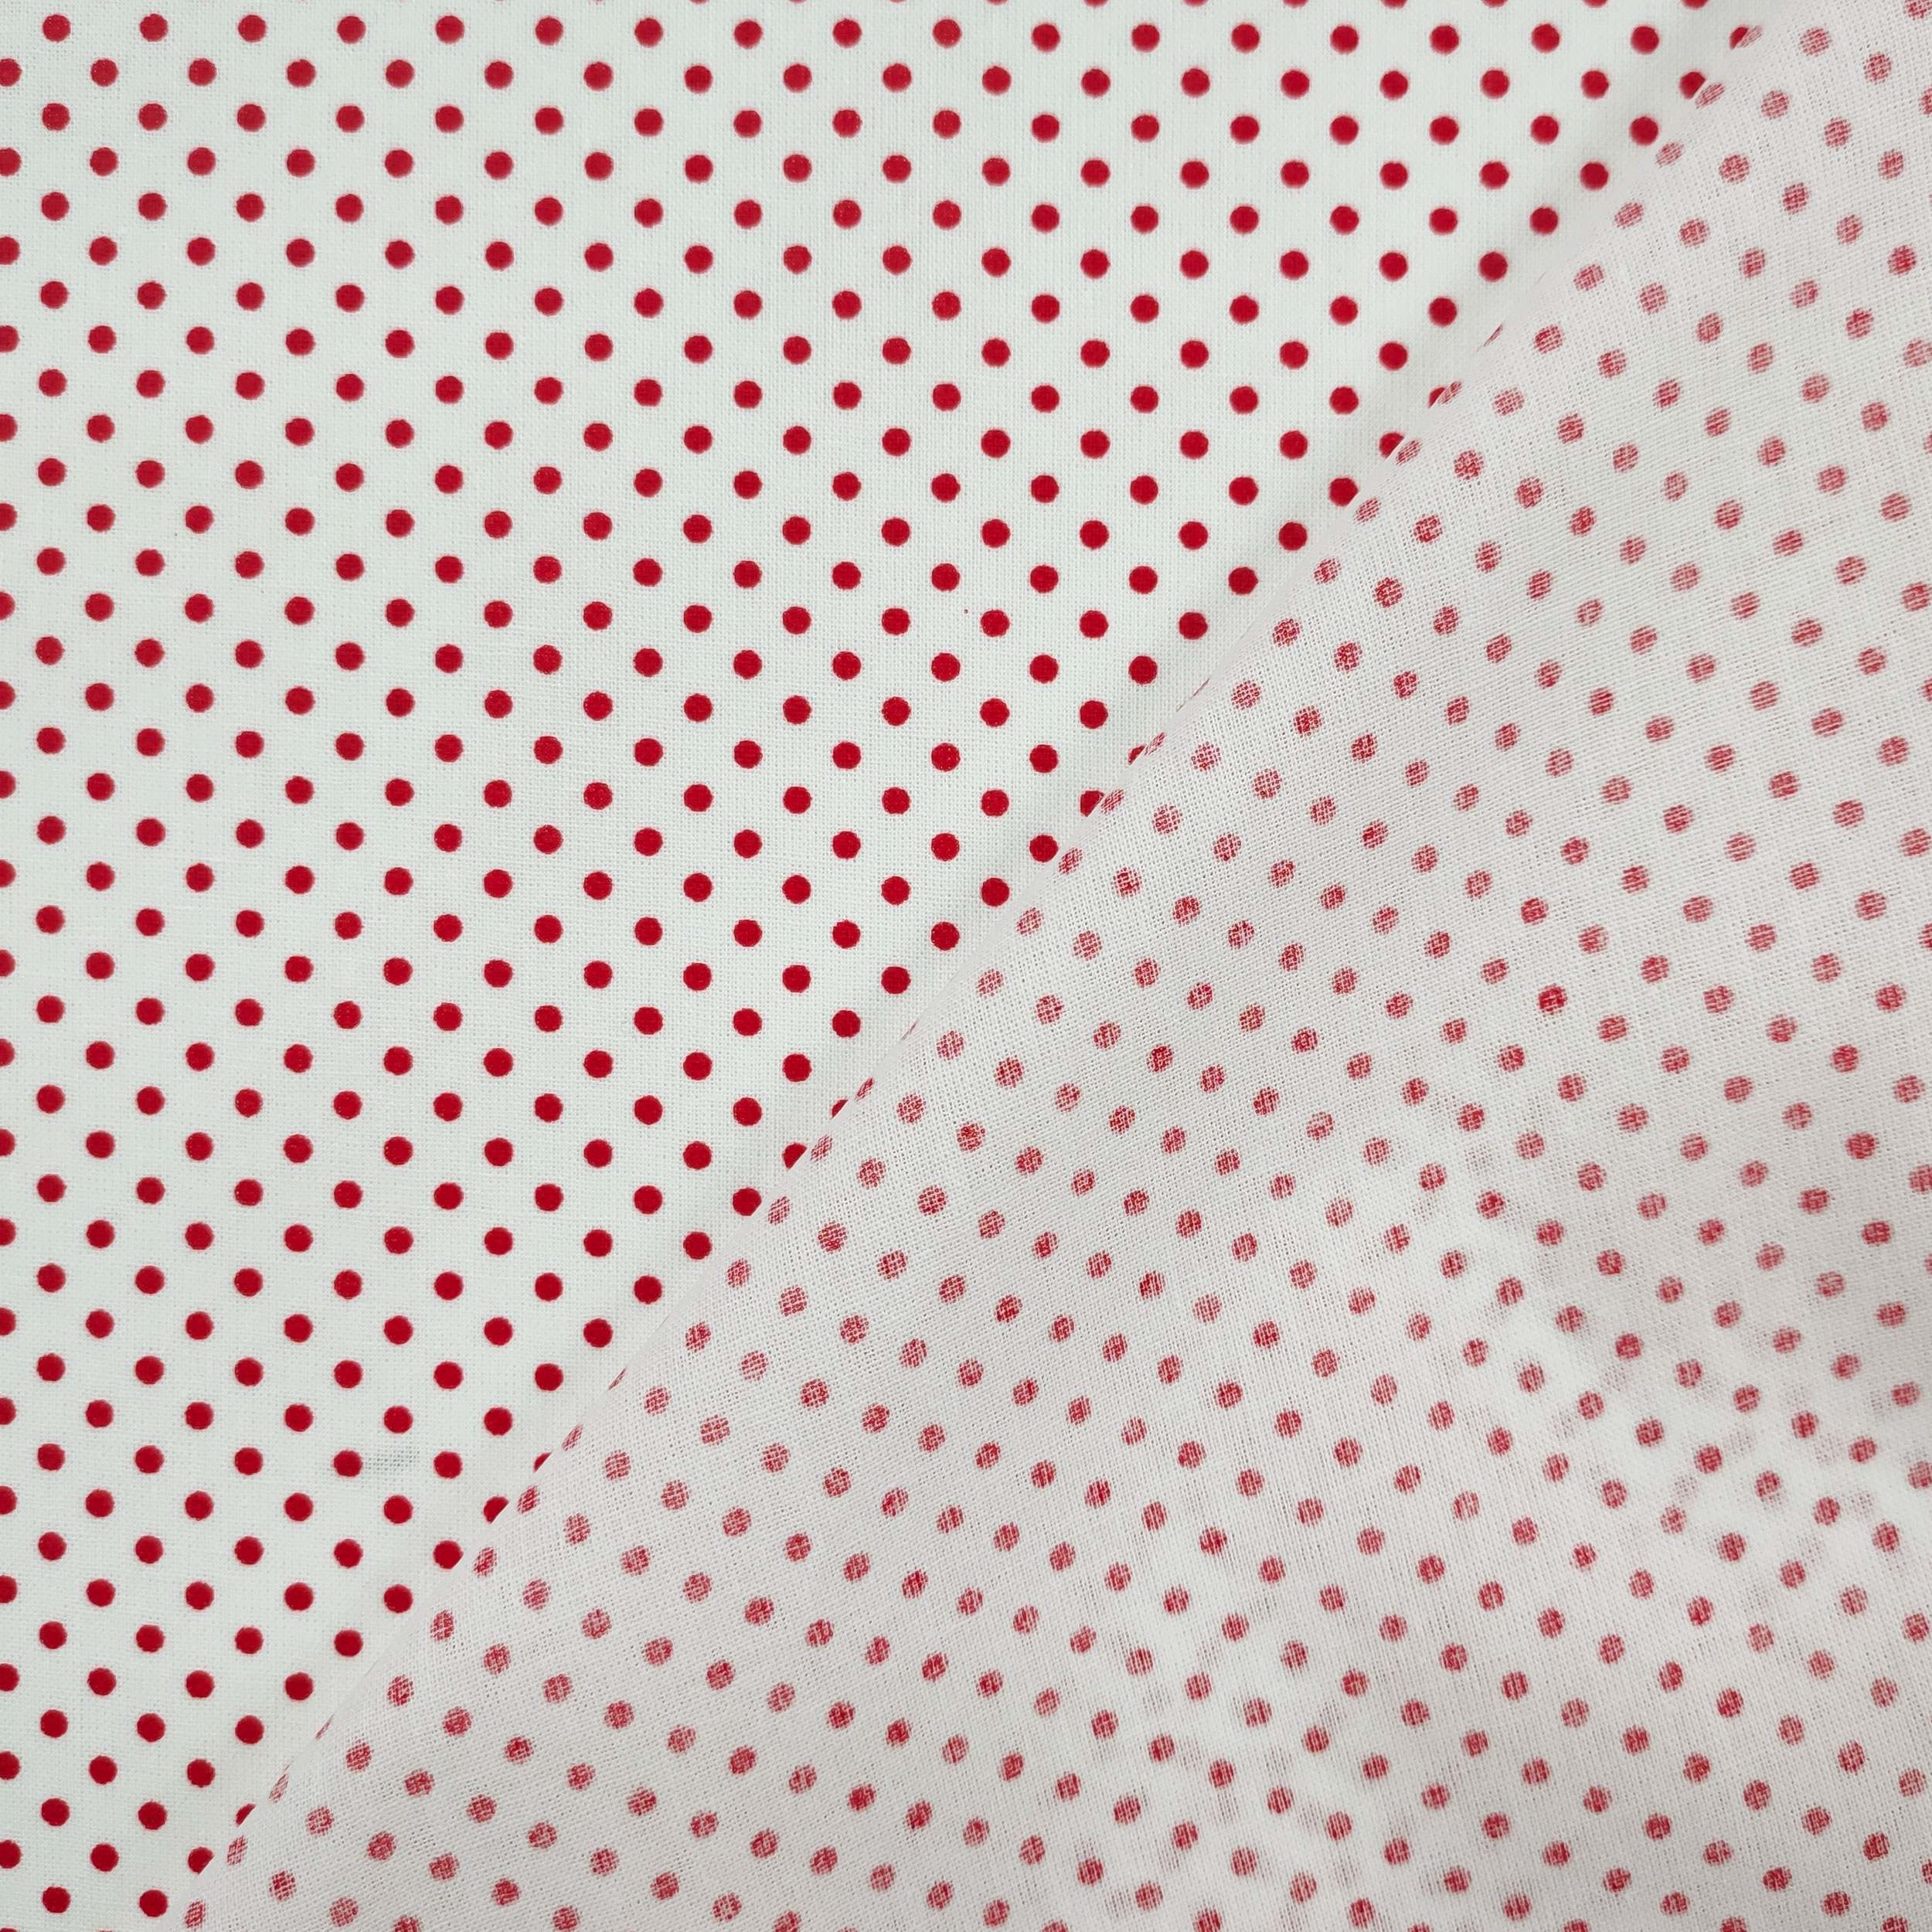 tessuto cotone pois rossi sfondo bianco